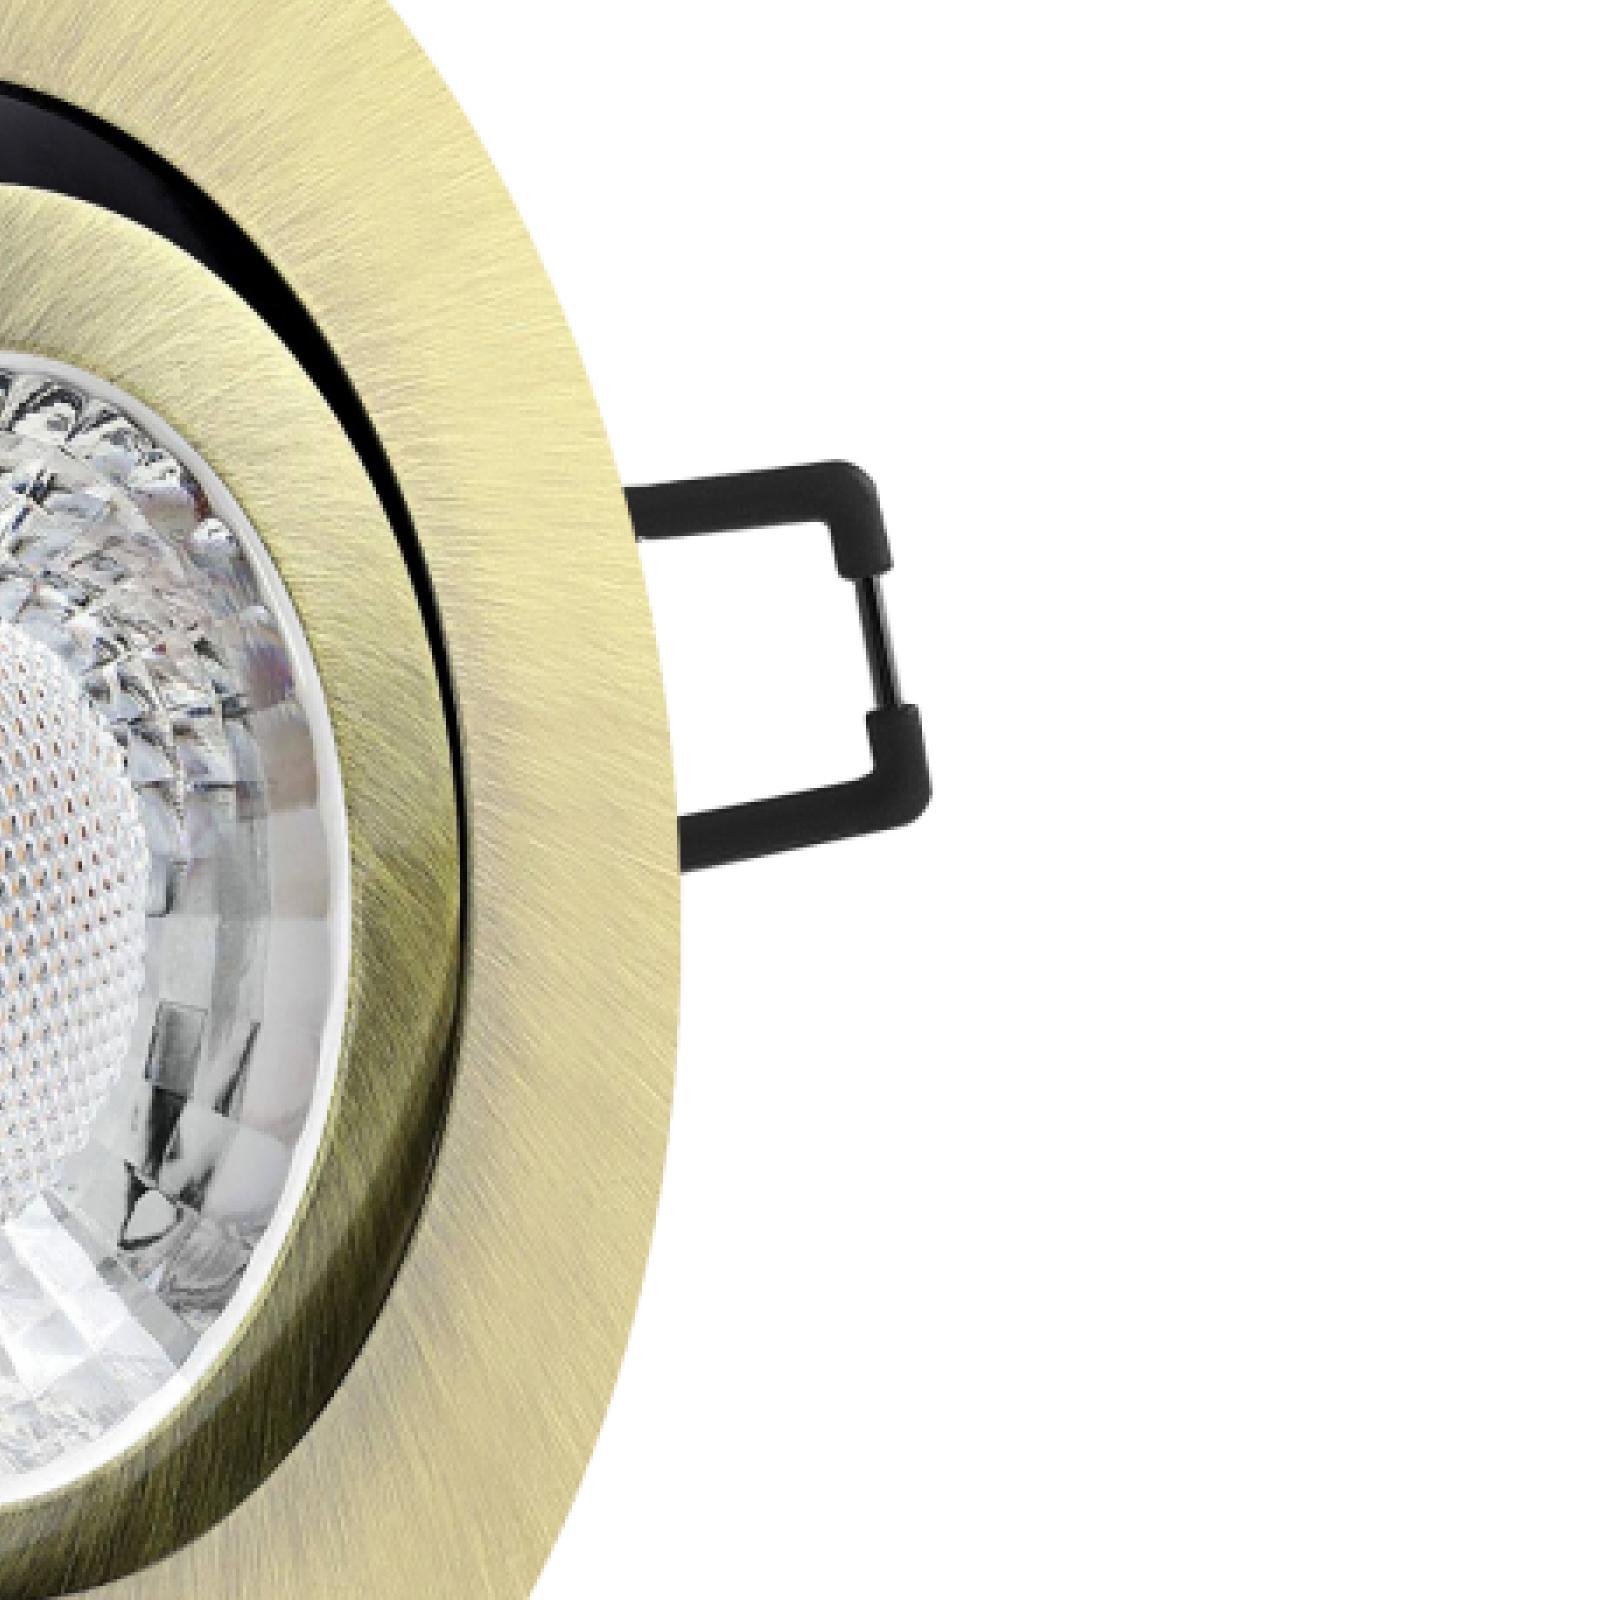 LED Einbaustrahler Altmessing gebürstet | Runder Einbauspot | 360° schwenkbar | Lochmaß Ø 68mm - 75mm | Einbautiefe 64mm | Anschlussfertig mit GU10 230V Fassung 